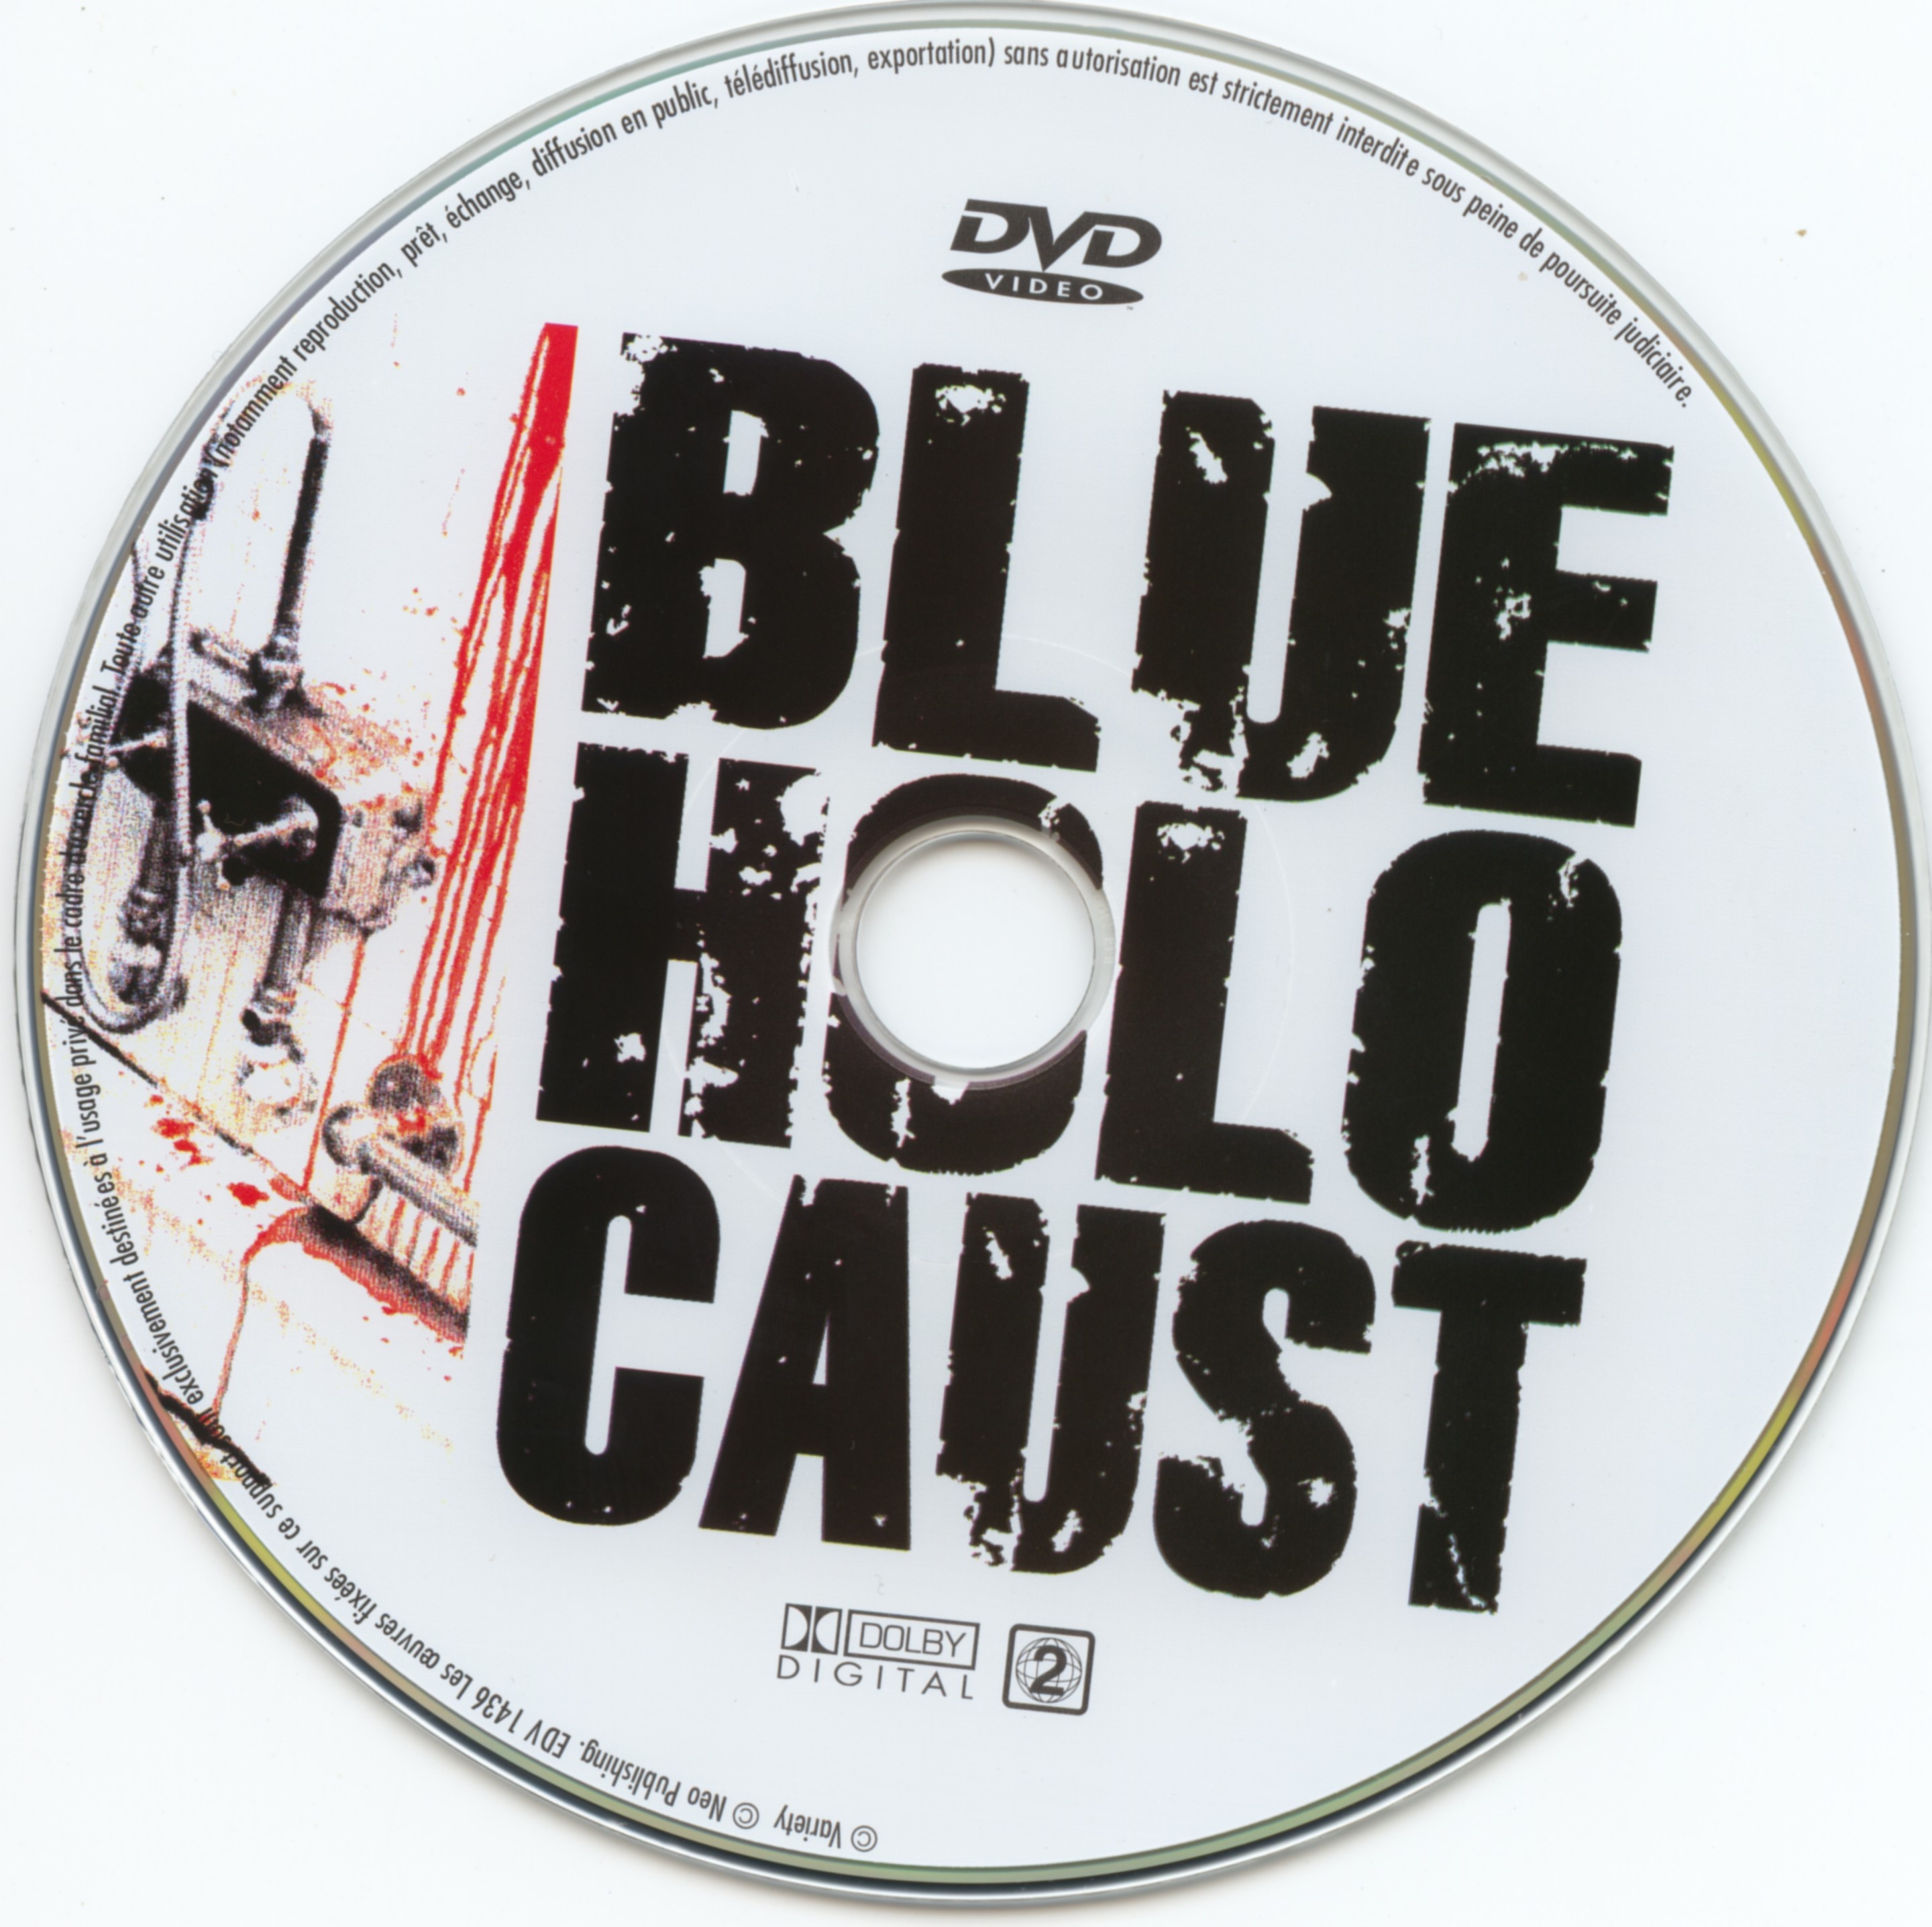 Blue holocaust